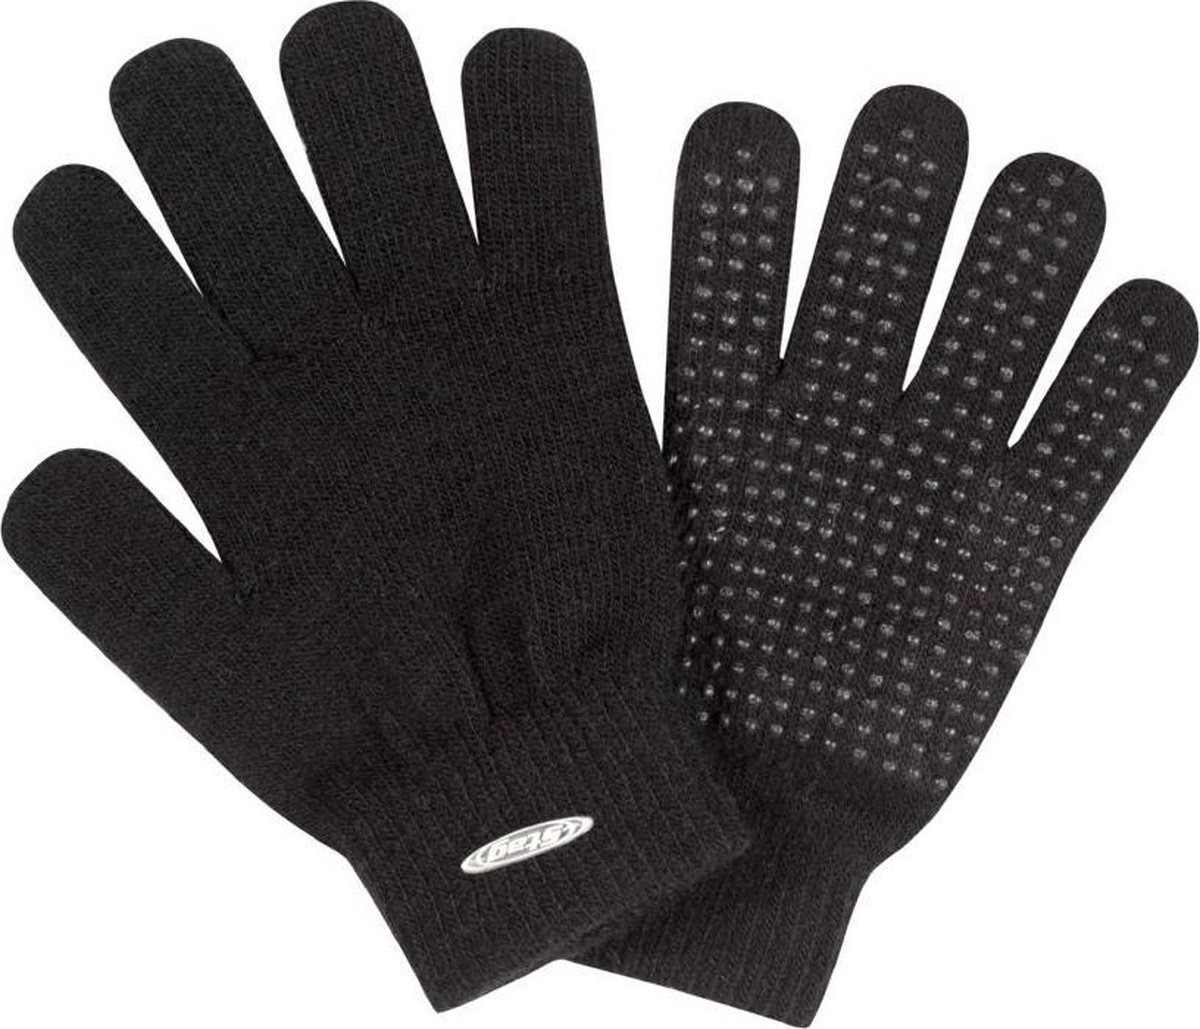 winter gloves Stag hockey gloves - handschoenen - handschoenen dames - handschoenen winter - wanten - zwart - Cadeau